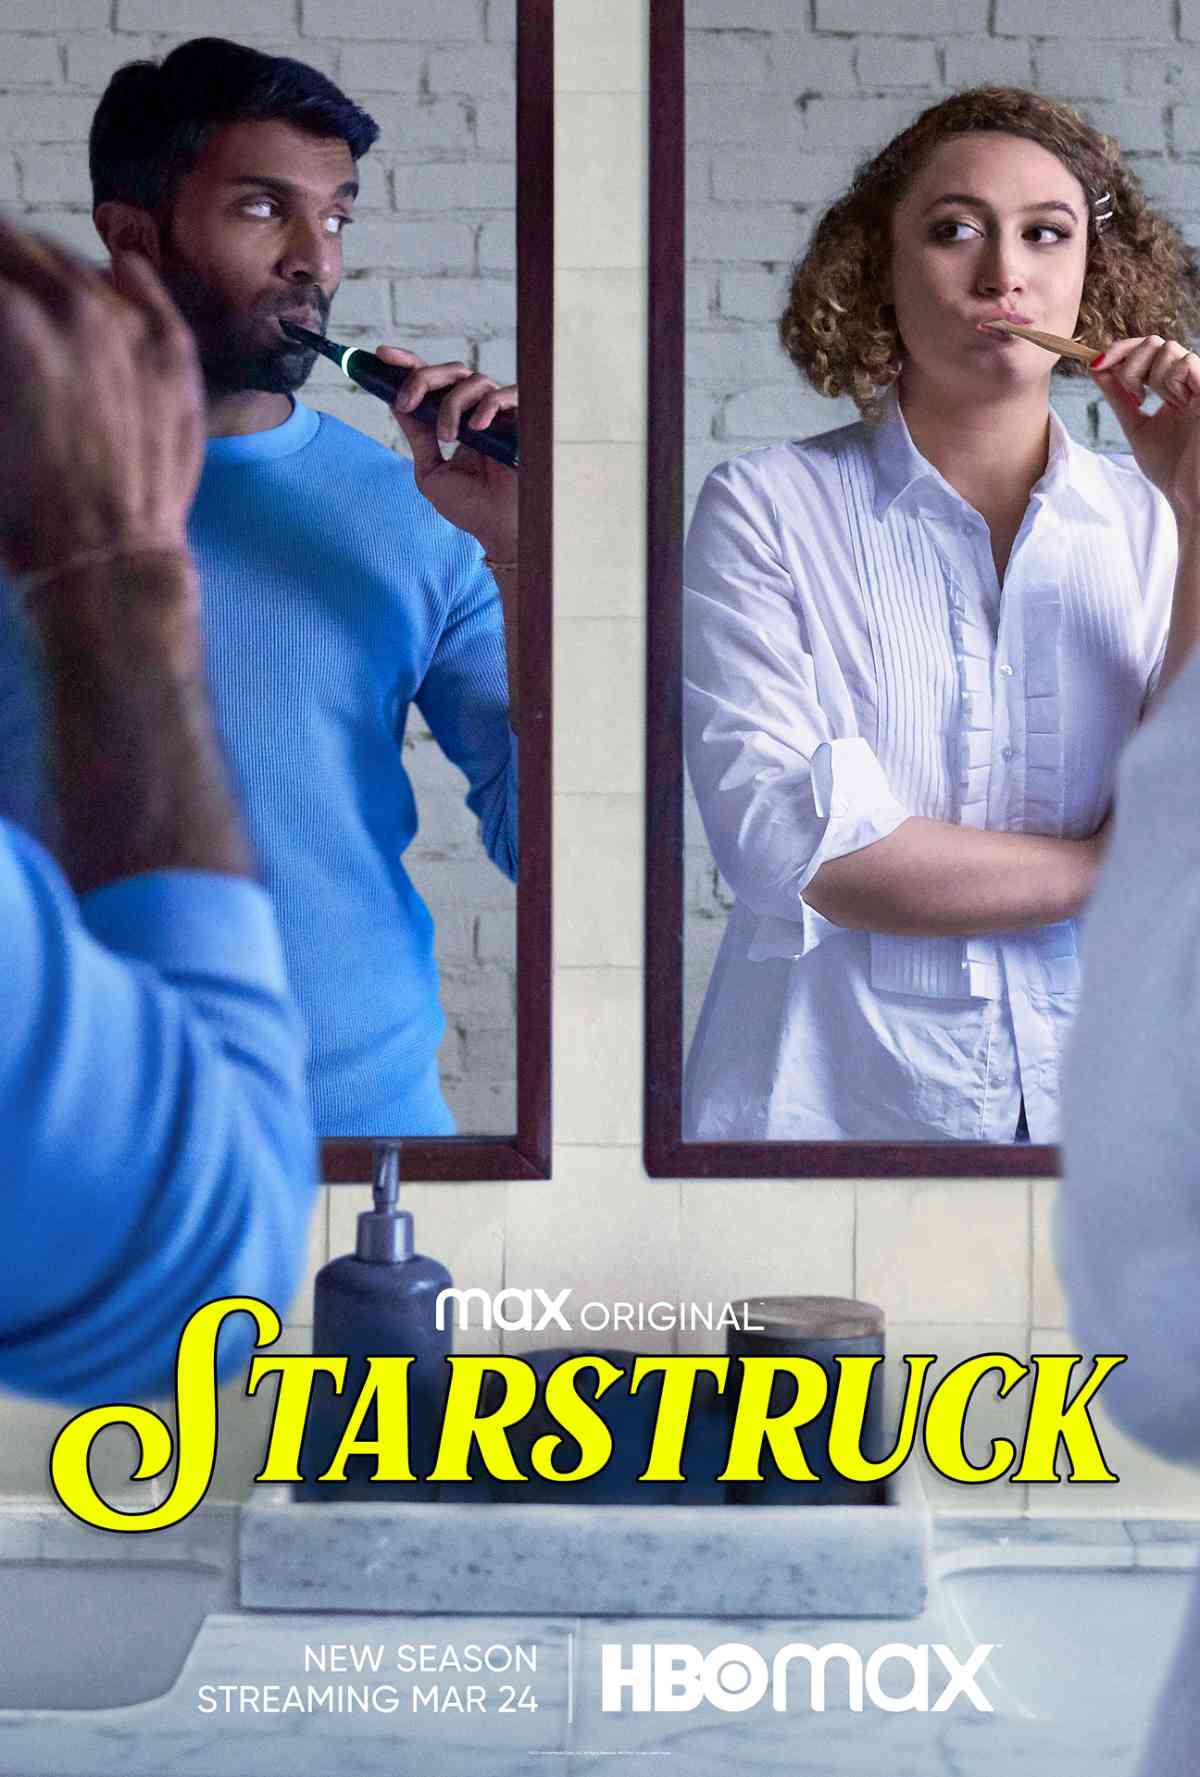 Starstruck Season 2